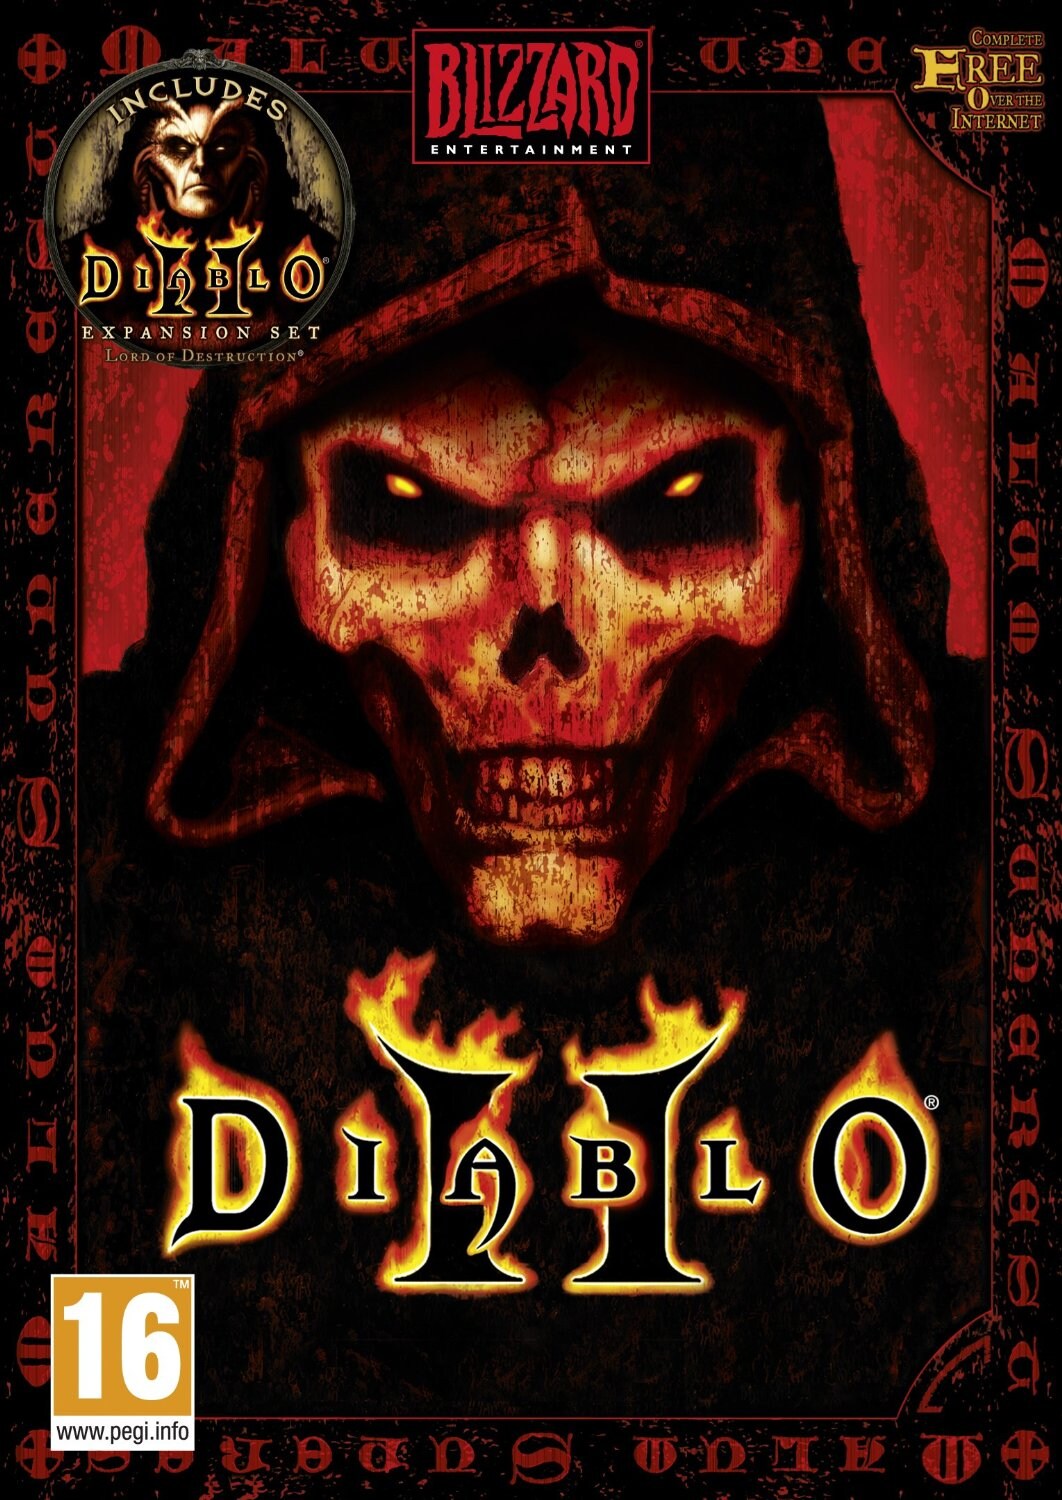 Diablo II + Lord of Destruction Bundle (PC) - Battle.net Key - GLOBAL - 1